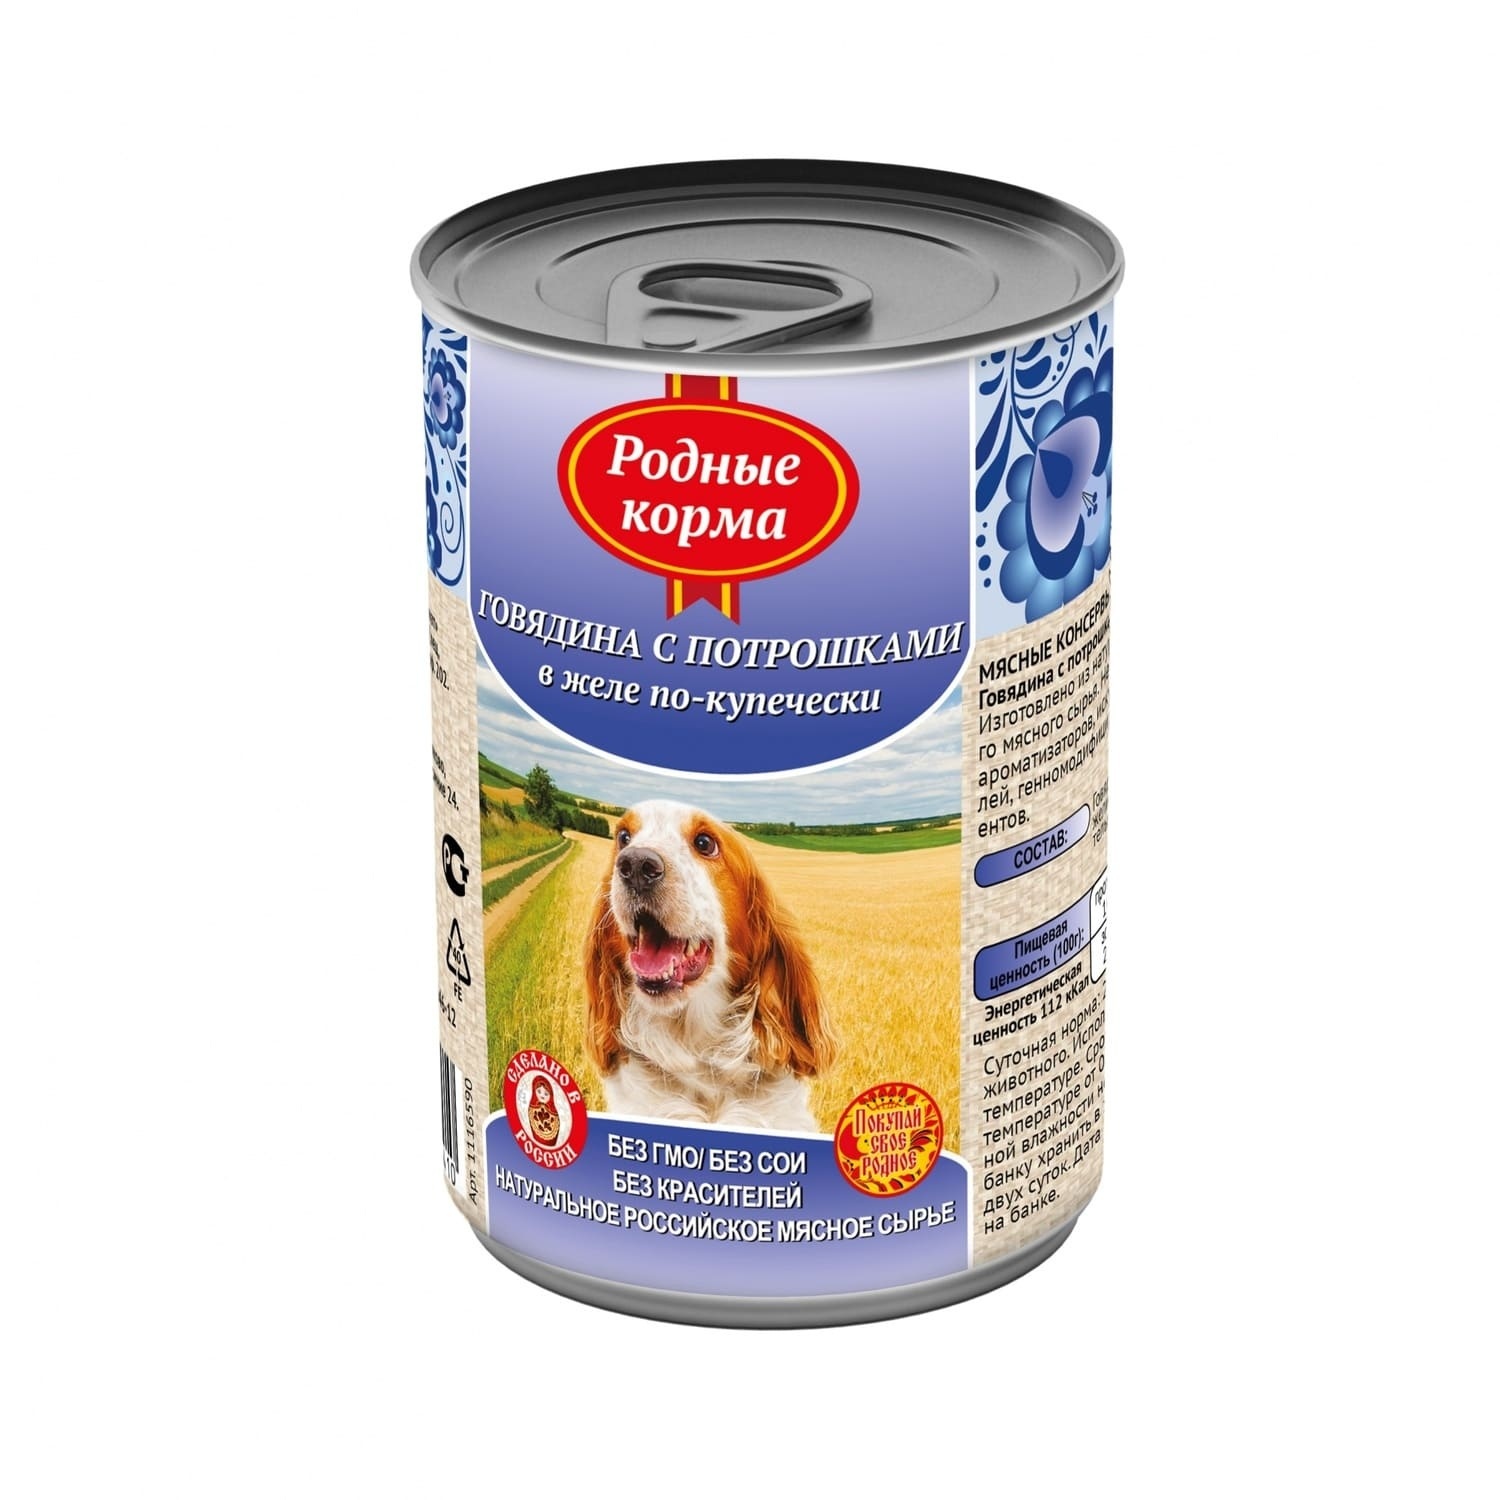 Родные корма консервы для собак, говядина с потрошками в желе по-купечески (410 г)